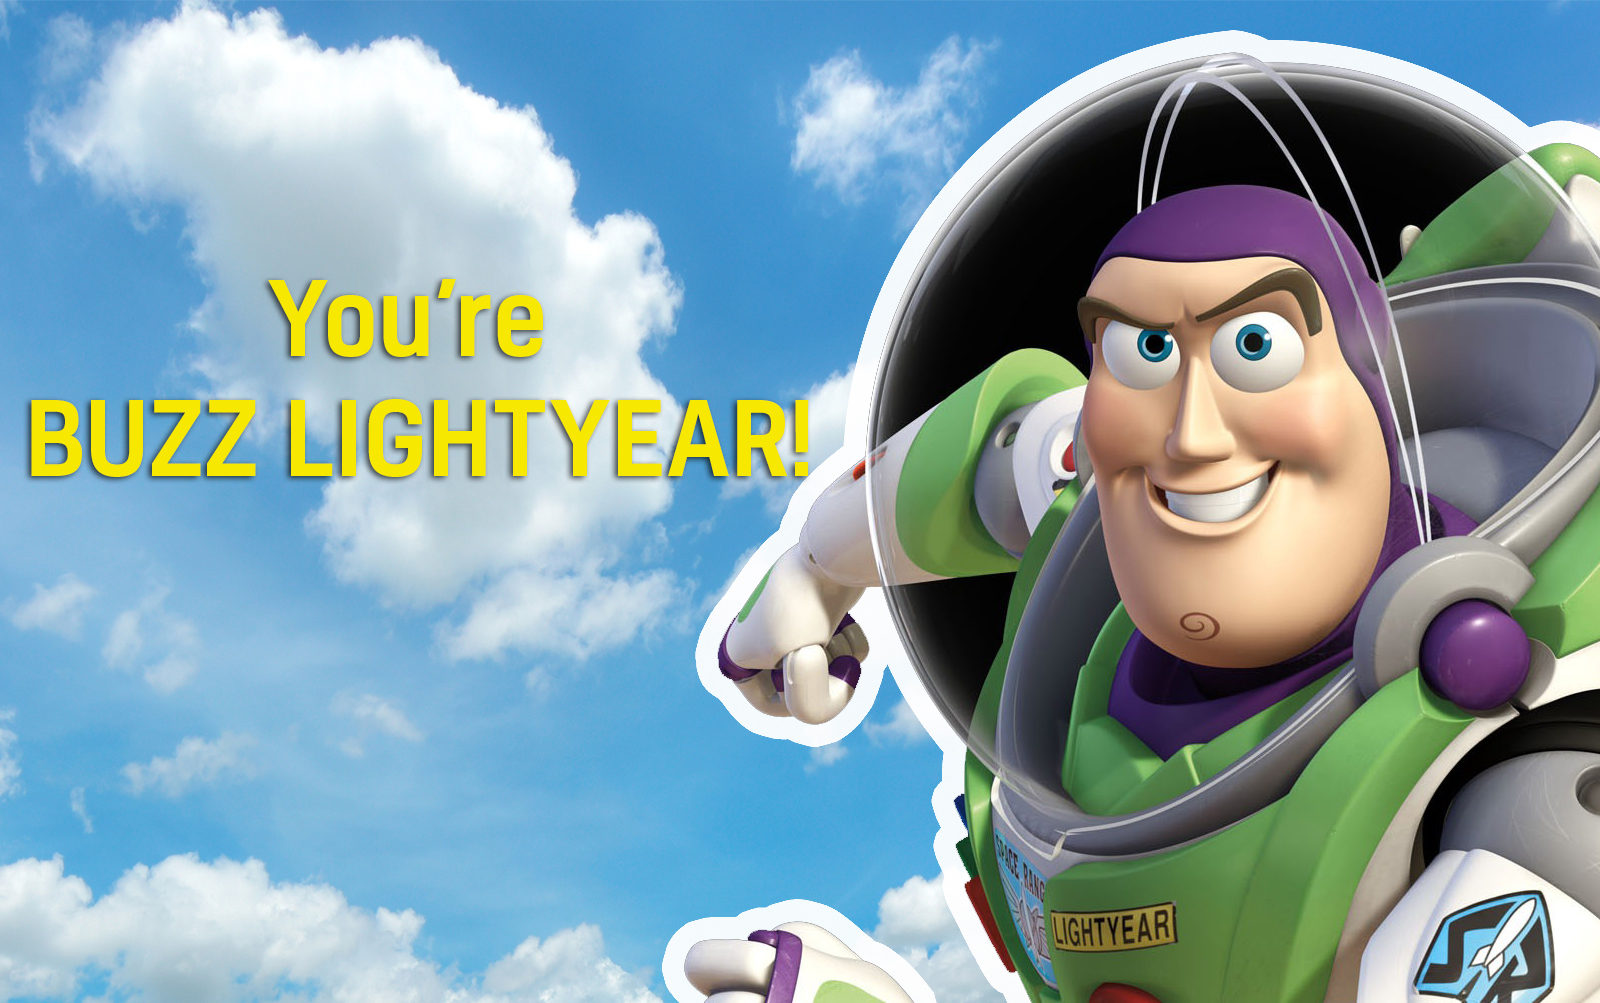 Toy Story's Buzz Lightyear